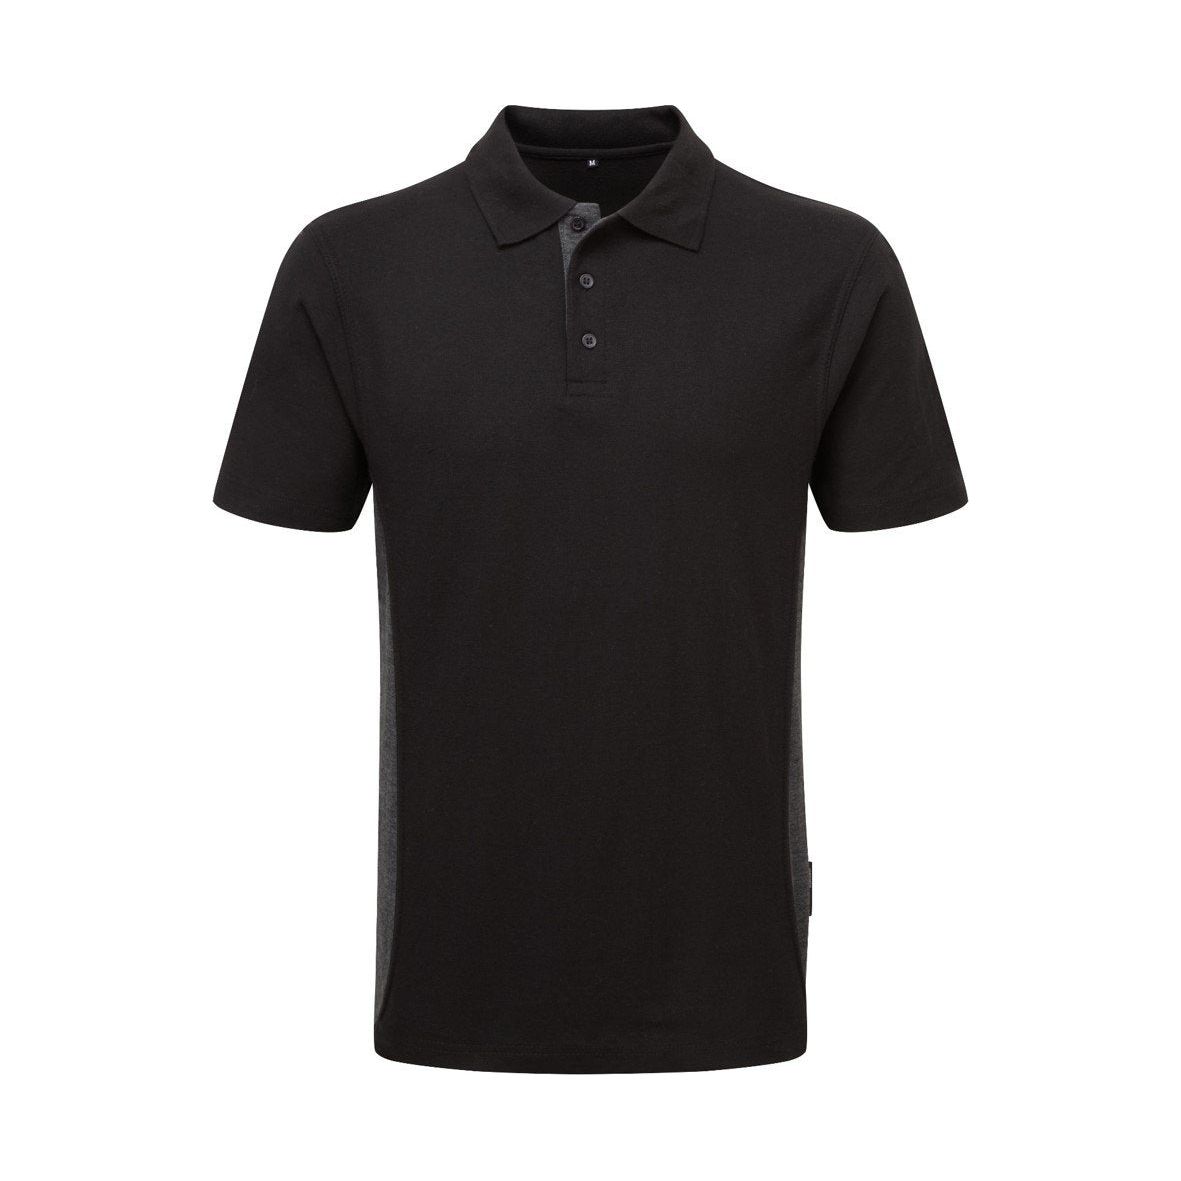 Tuffstuff 50/50 Poly/Cotton Polo Shirt Black